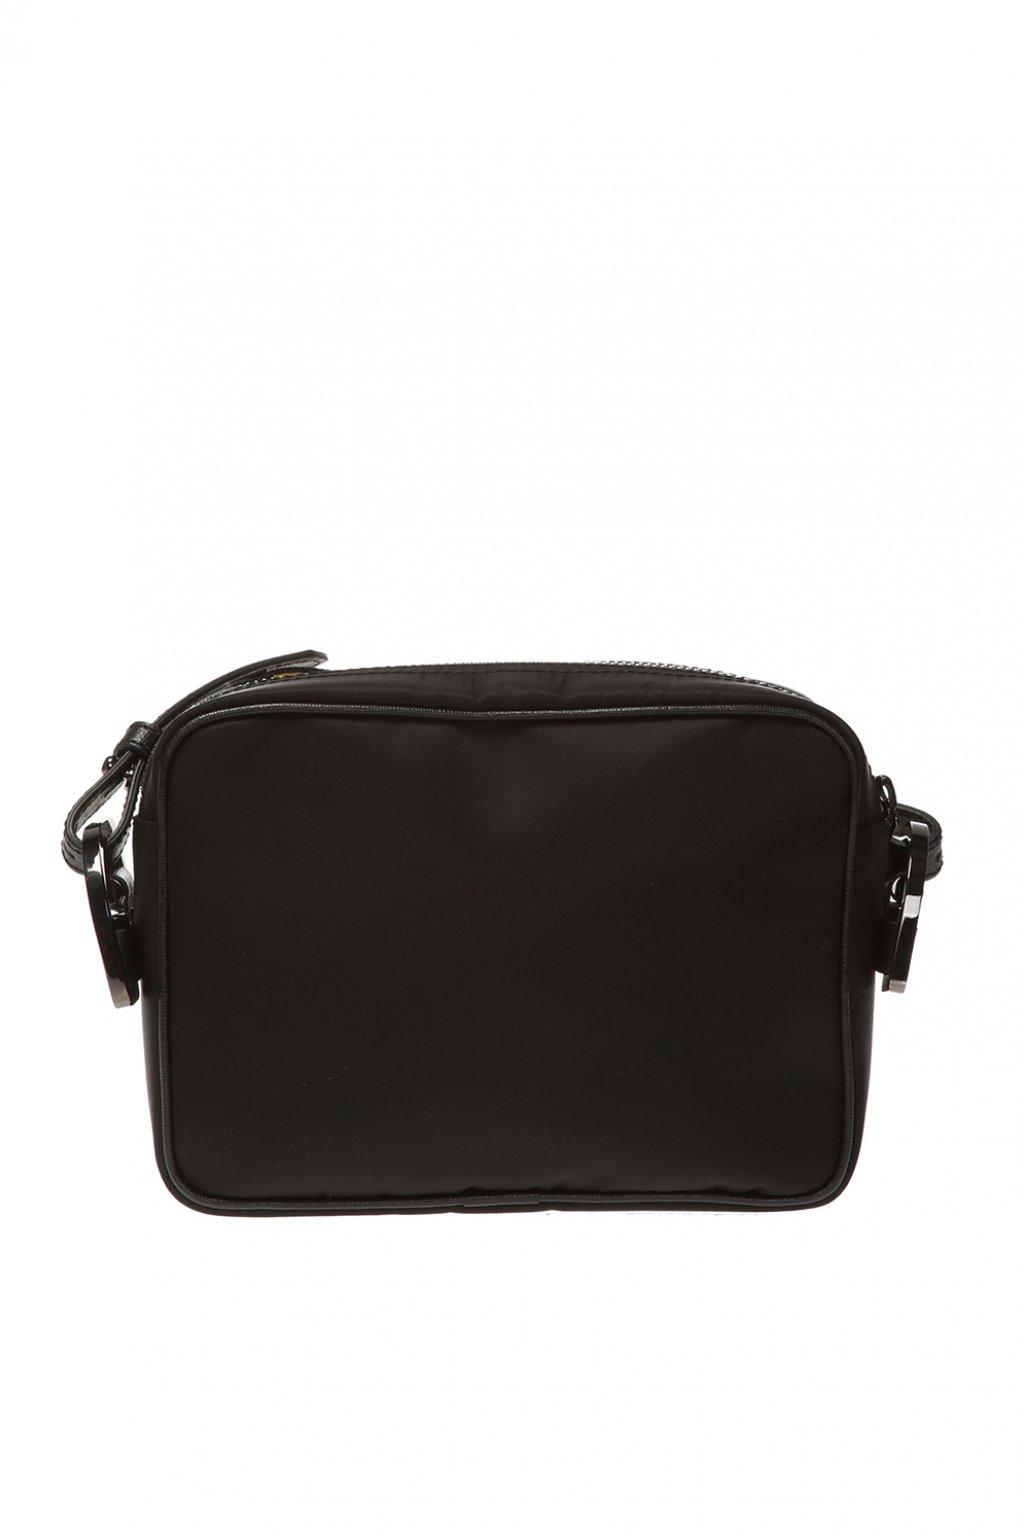 Off-White c/o Virgil Abloh Synthetic Branded Shoulder Bag in Black for ...